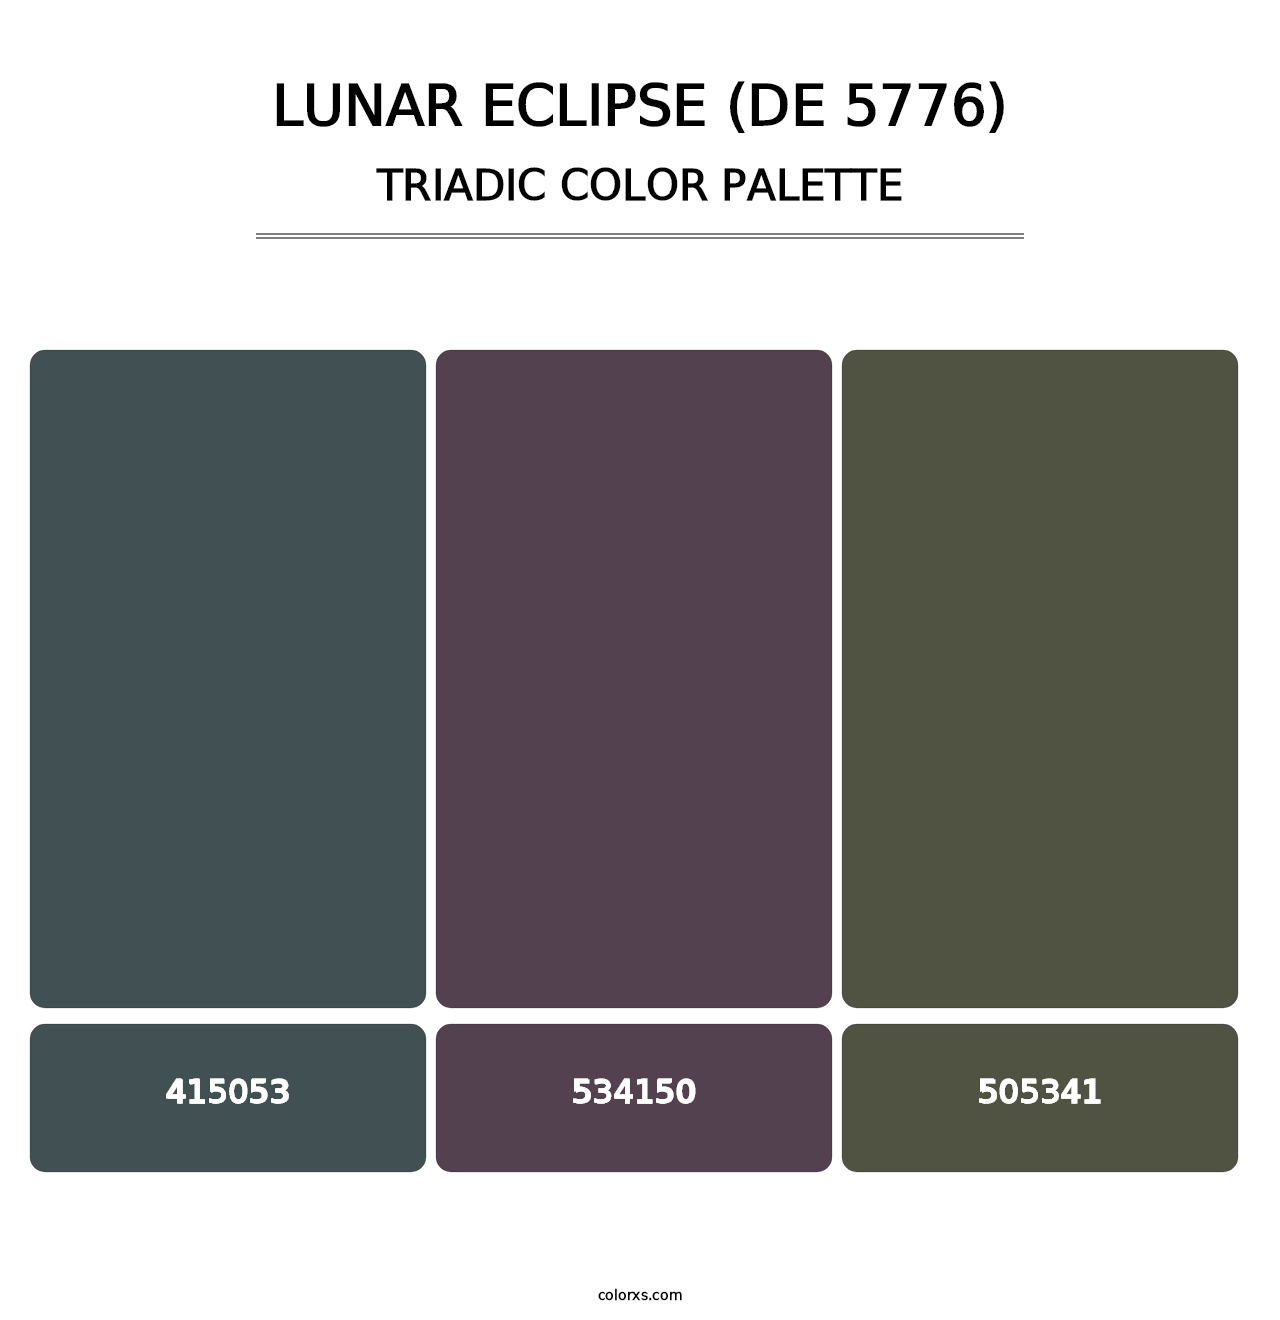 Lunar Eclipse (DE 5776) - Triadic Color Palette